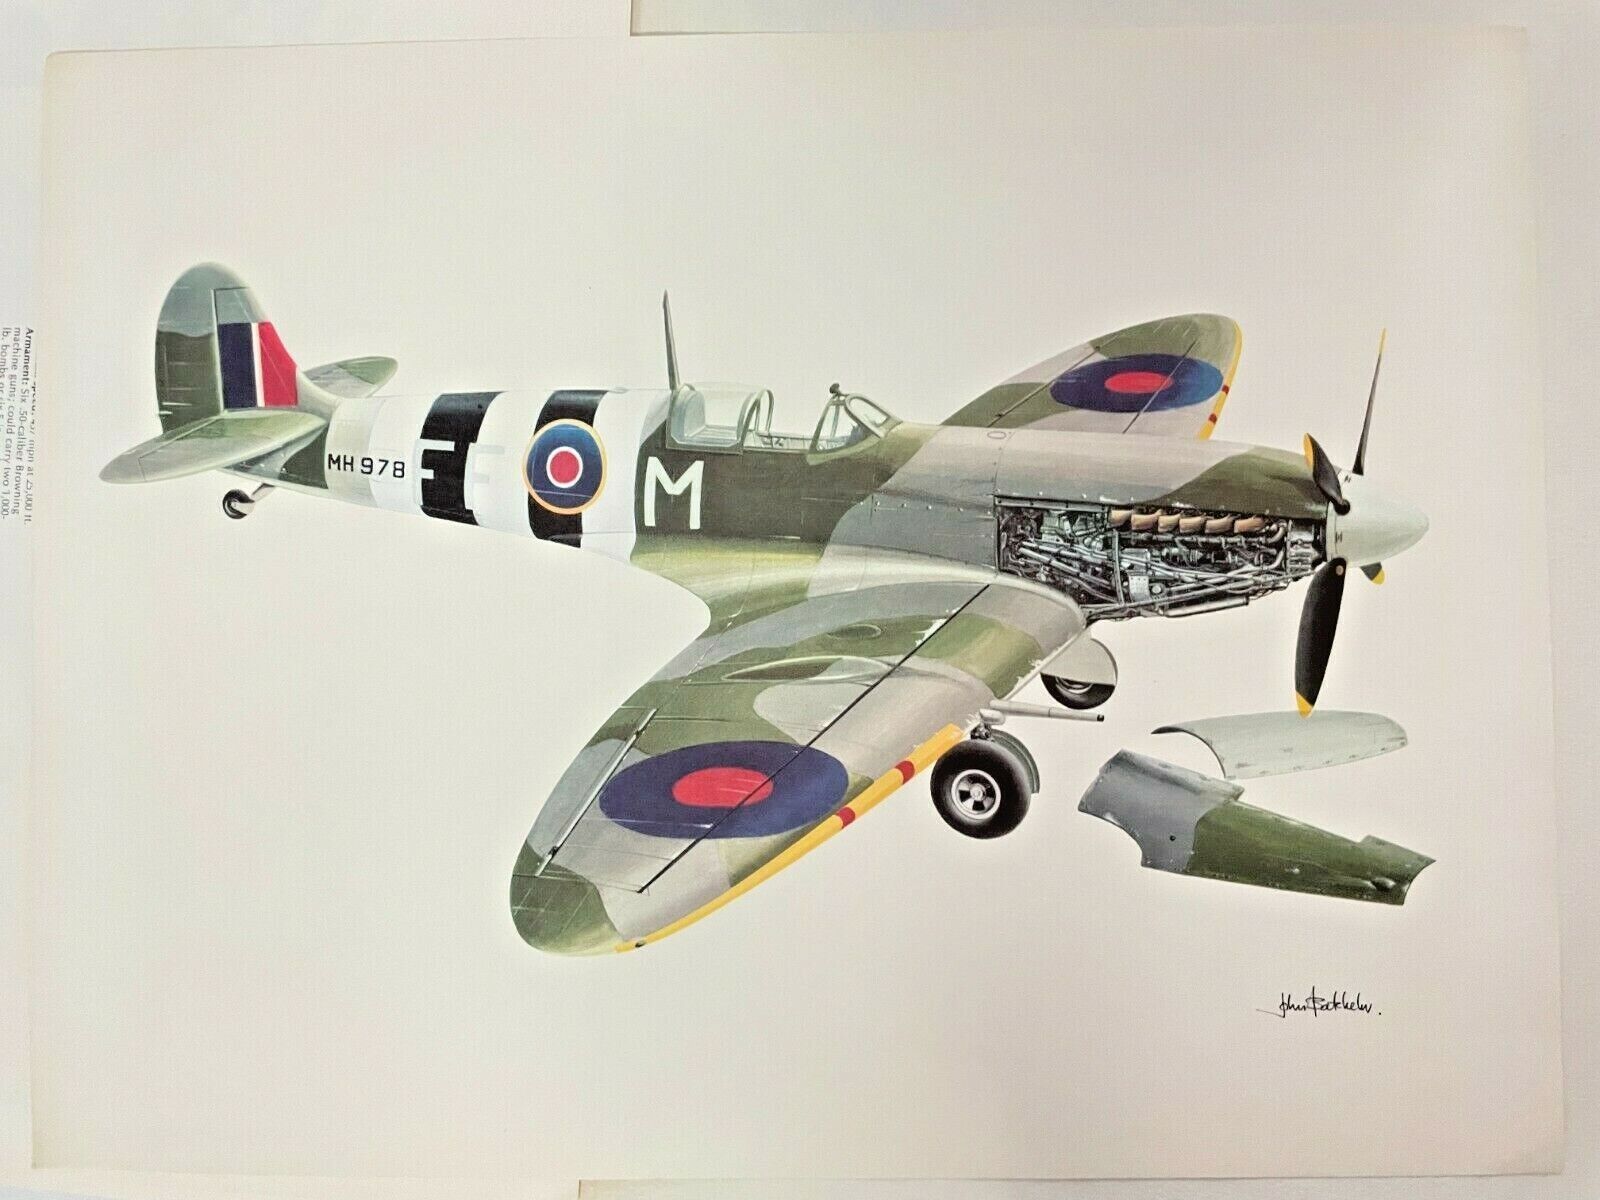 WW2 Spitfire Print by Time Life 1979; P51 Mustang Messerschmitt Zero Corsair